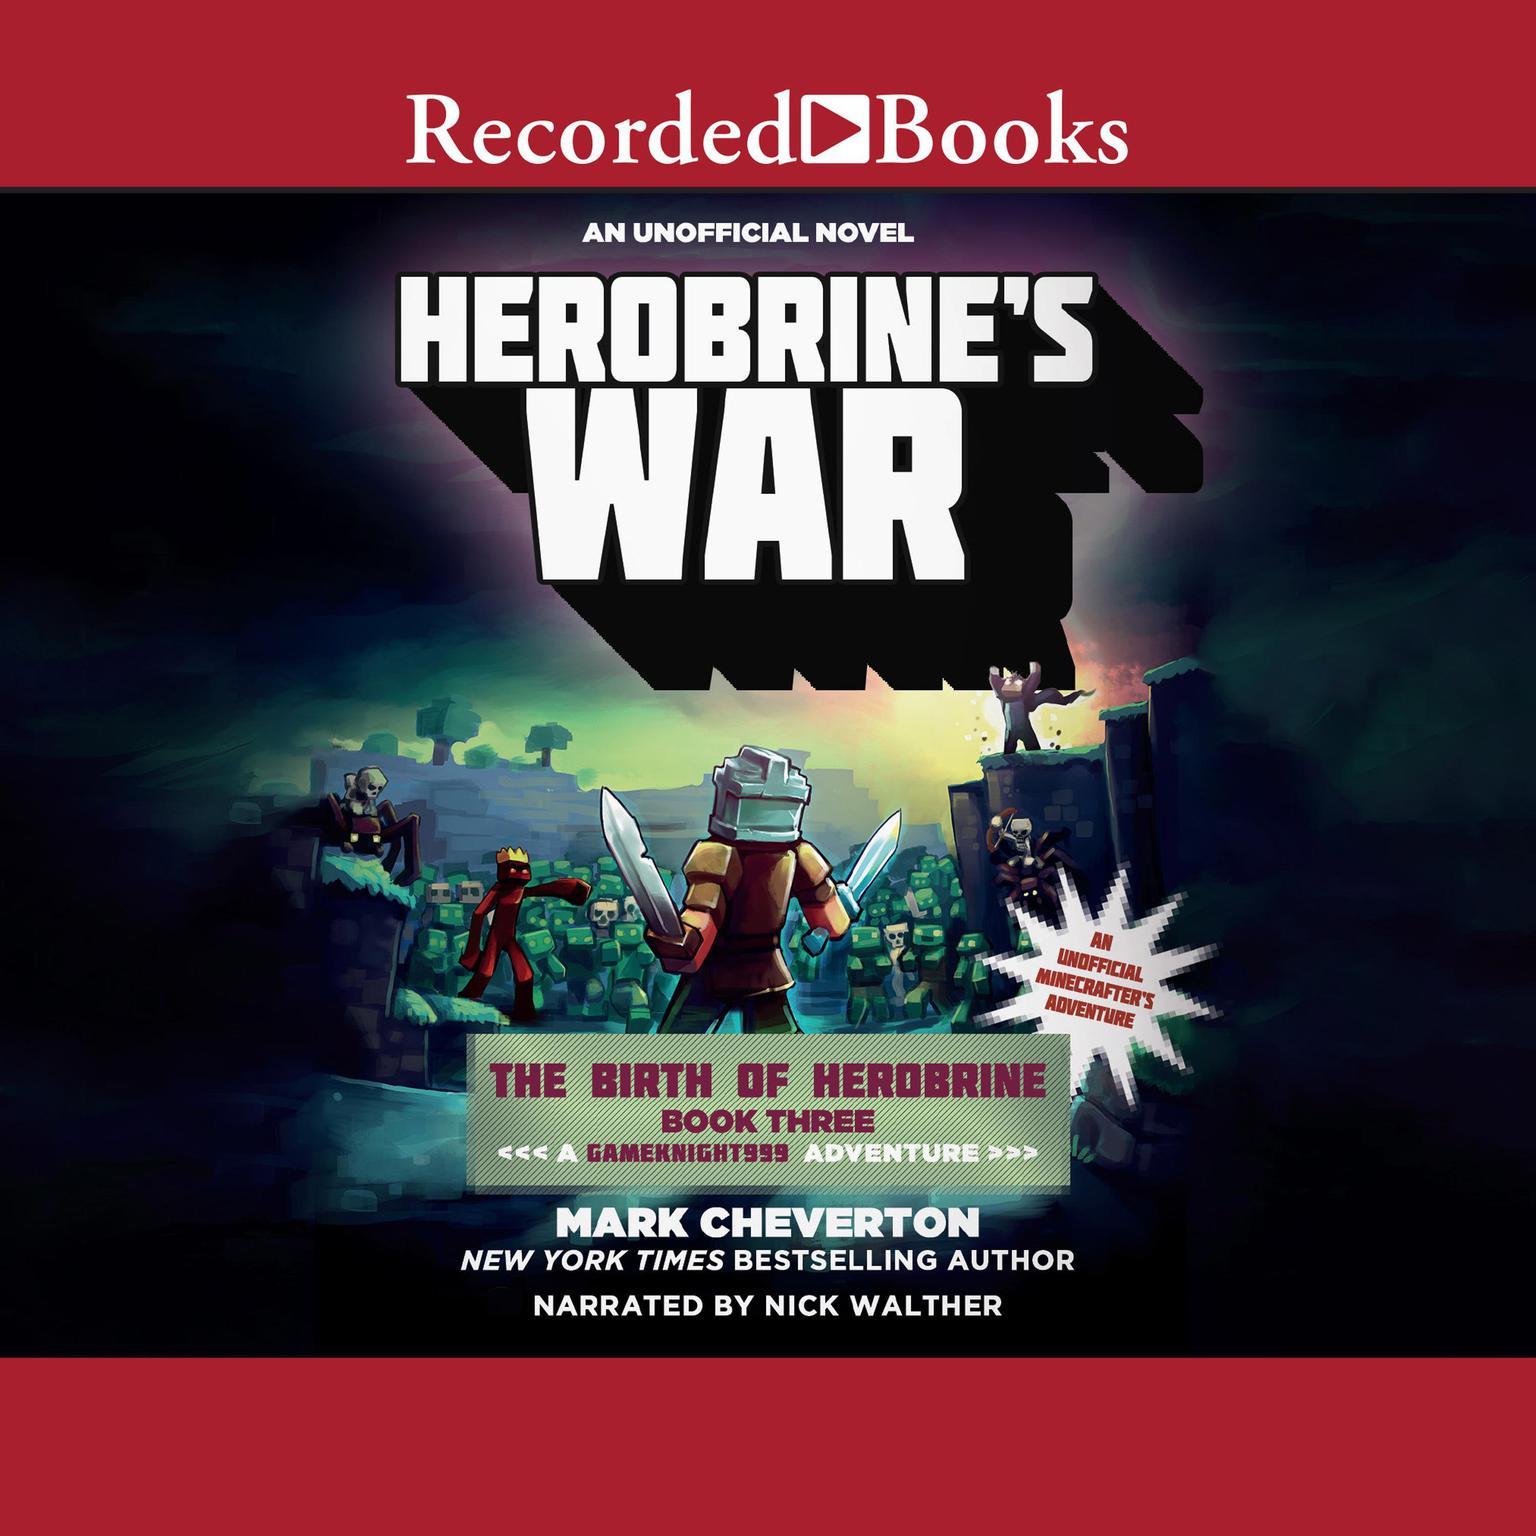 Herobrines War: A GameKnight999 Adventure Audiobook, by Mark Cheverton